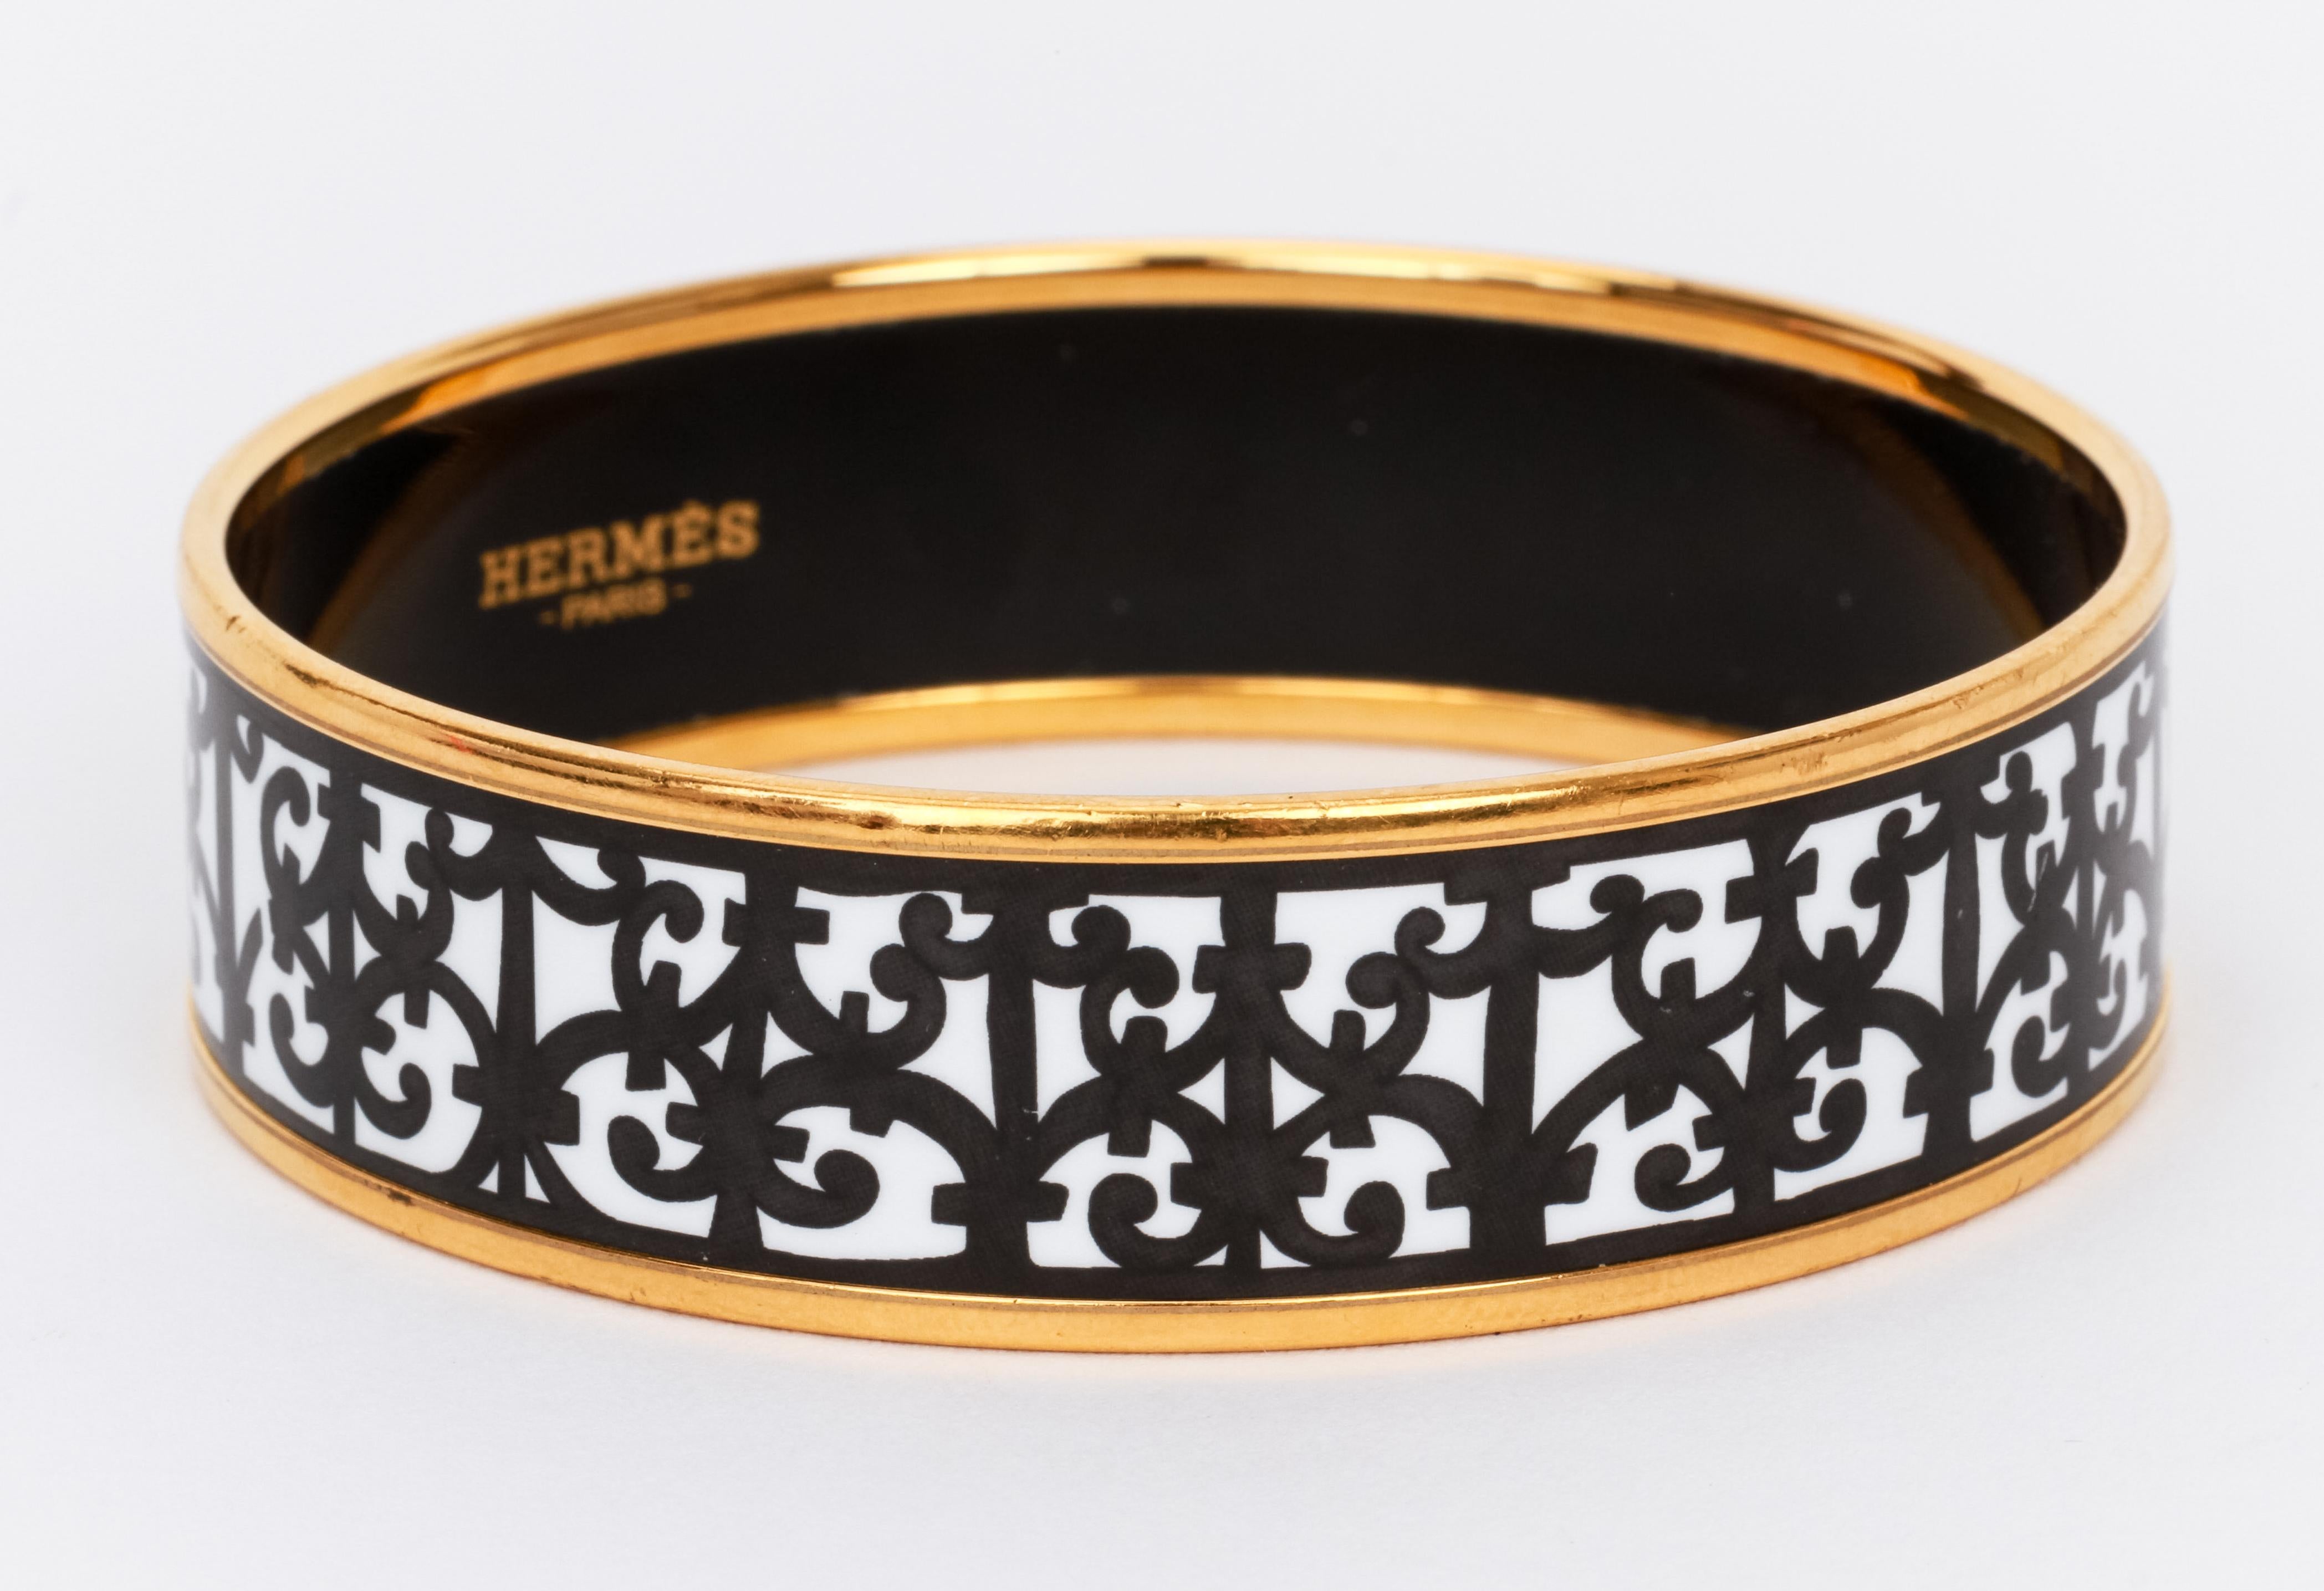 Hermes Balcons du Guadalquivir bangle bracelet in black and white enamel with gold borders